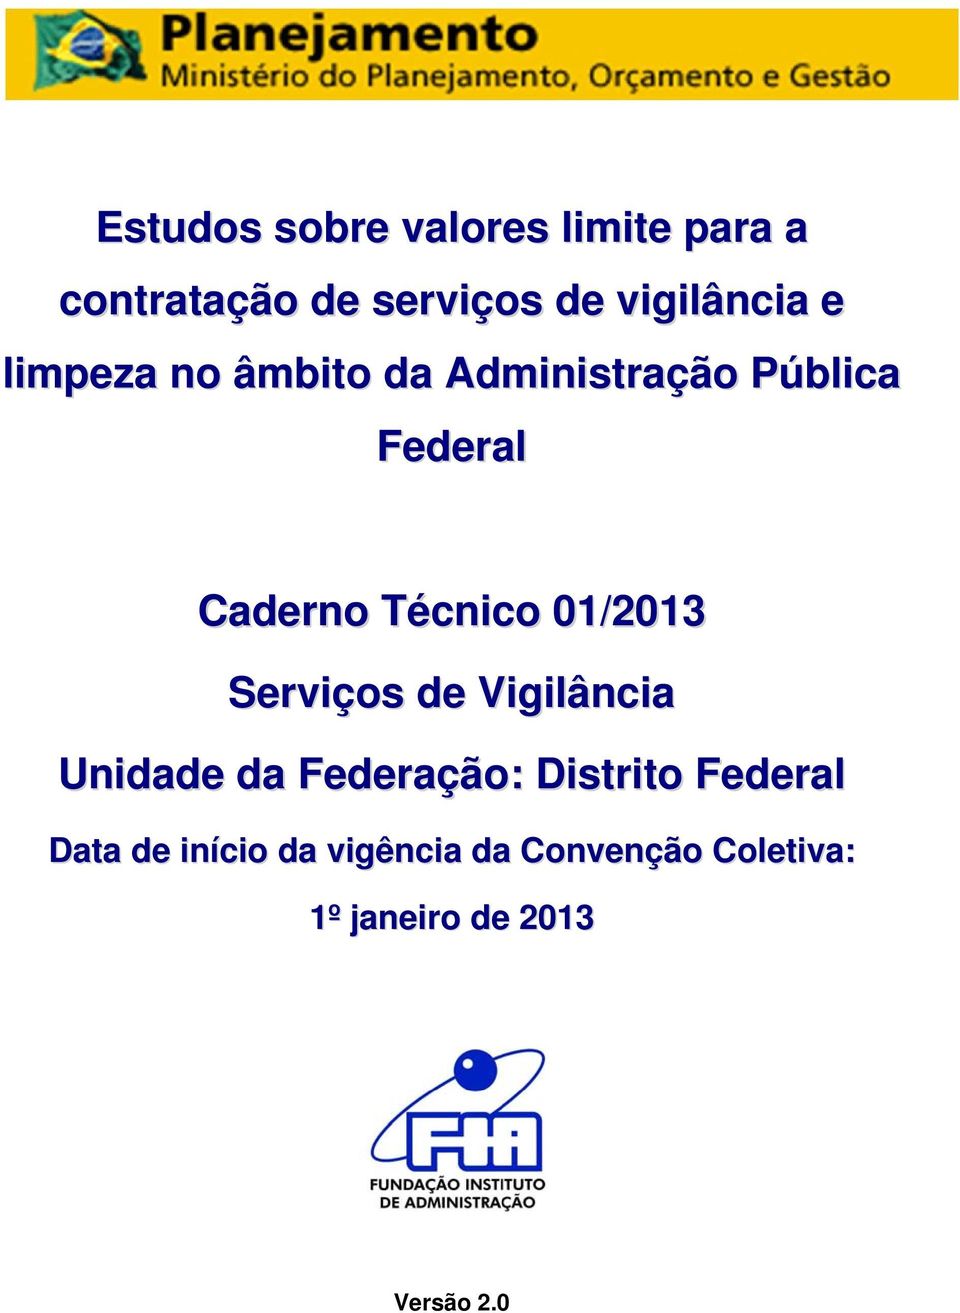 Caderno Técnico 01/2013 Serviços de Vigilância da Federação: Distrito